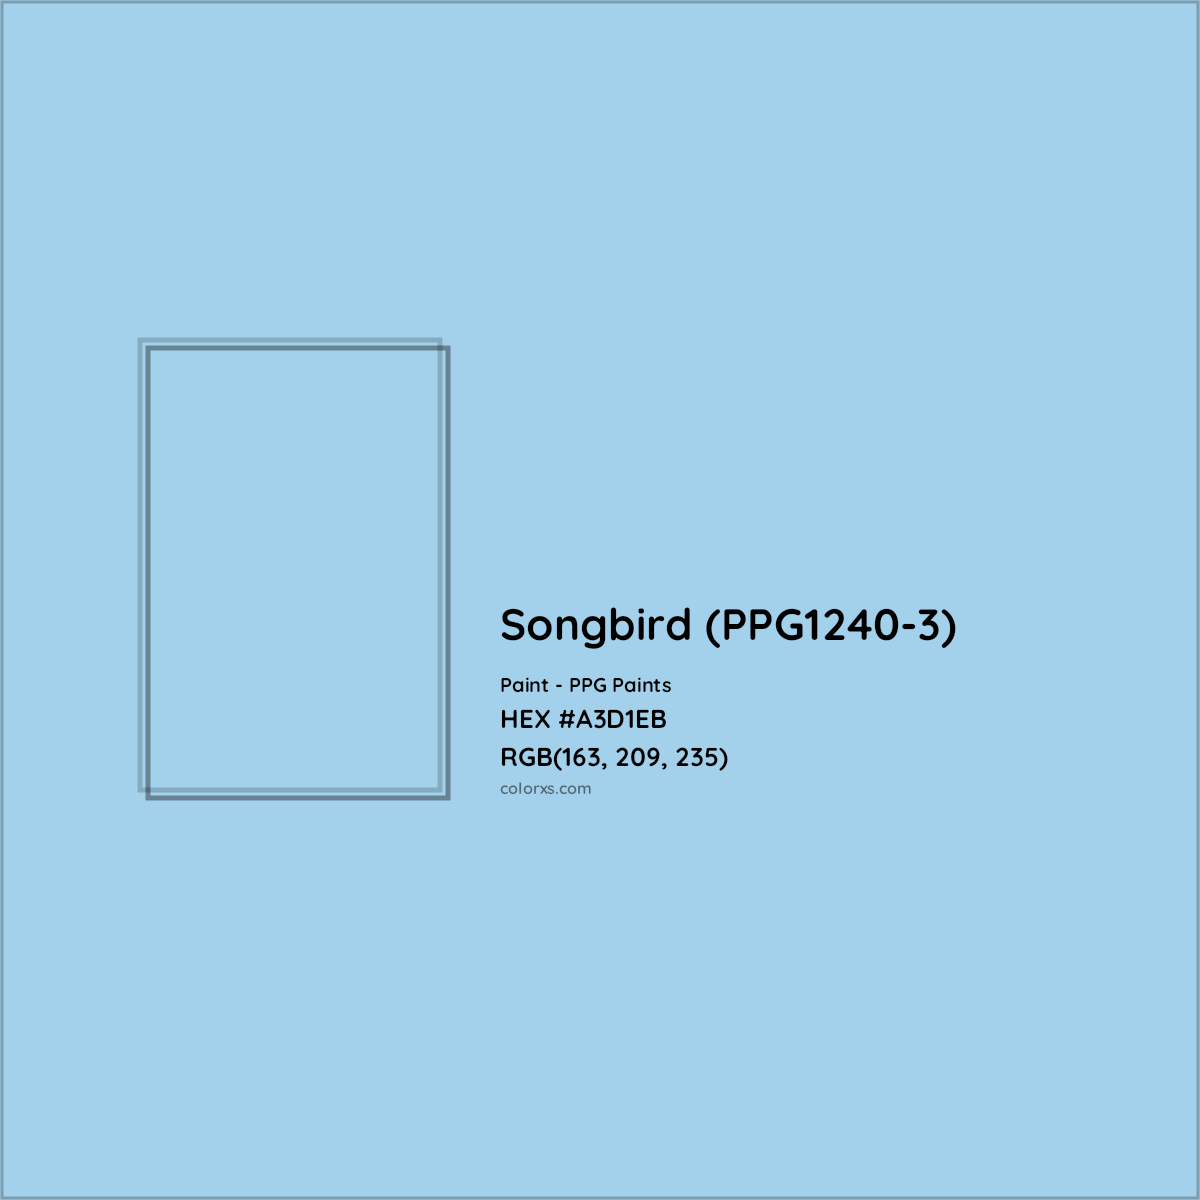 HEX #A3D1EB Songbird (PPG1240-3) Paint PPG Paints - Color Code